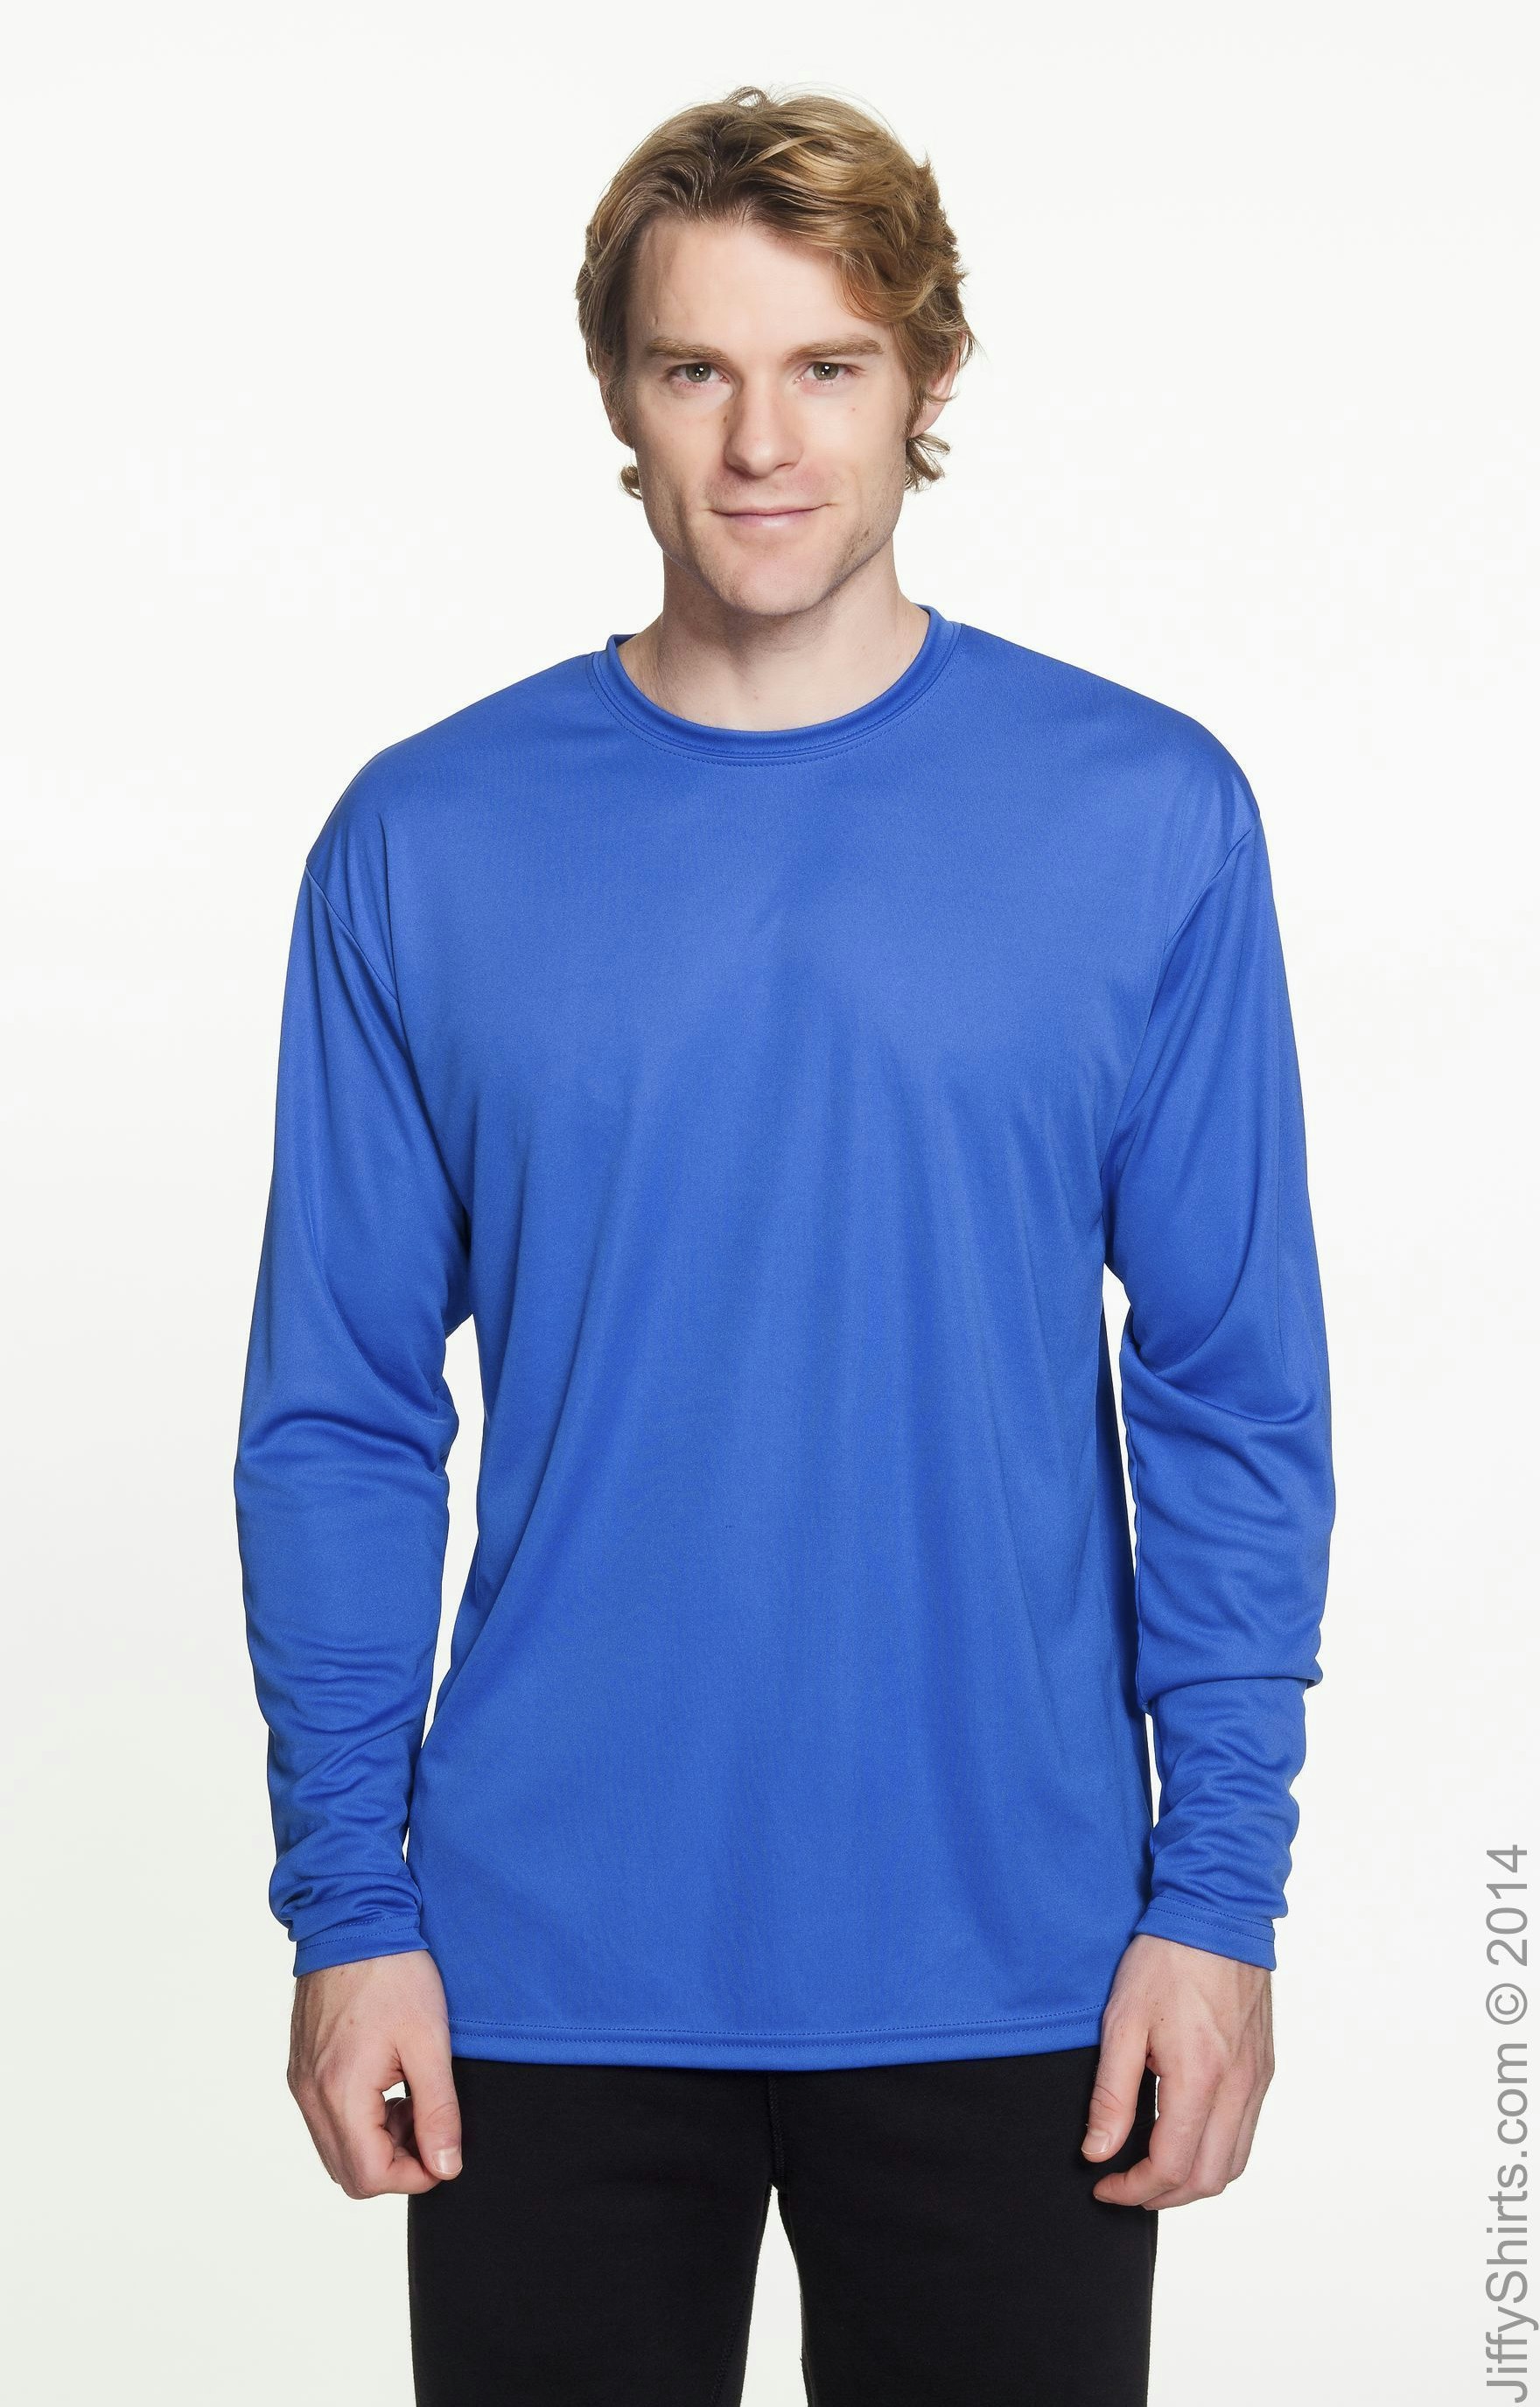 A4 N3165 Men's Cooling Performance Long Sleeve T Shirt | Jiffy Shirts